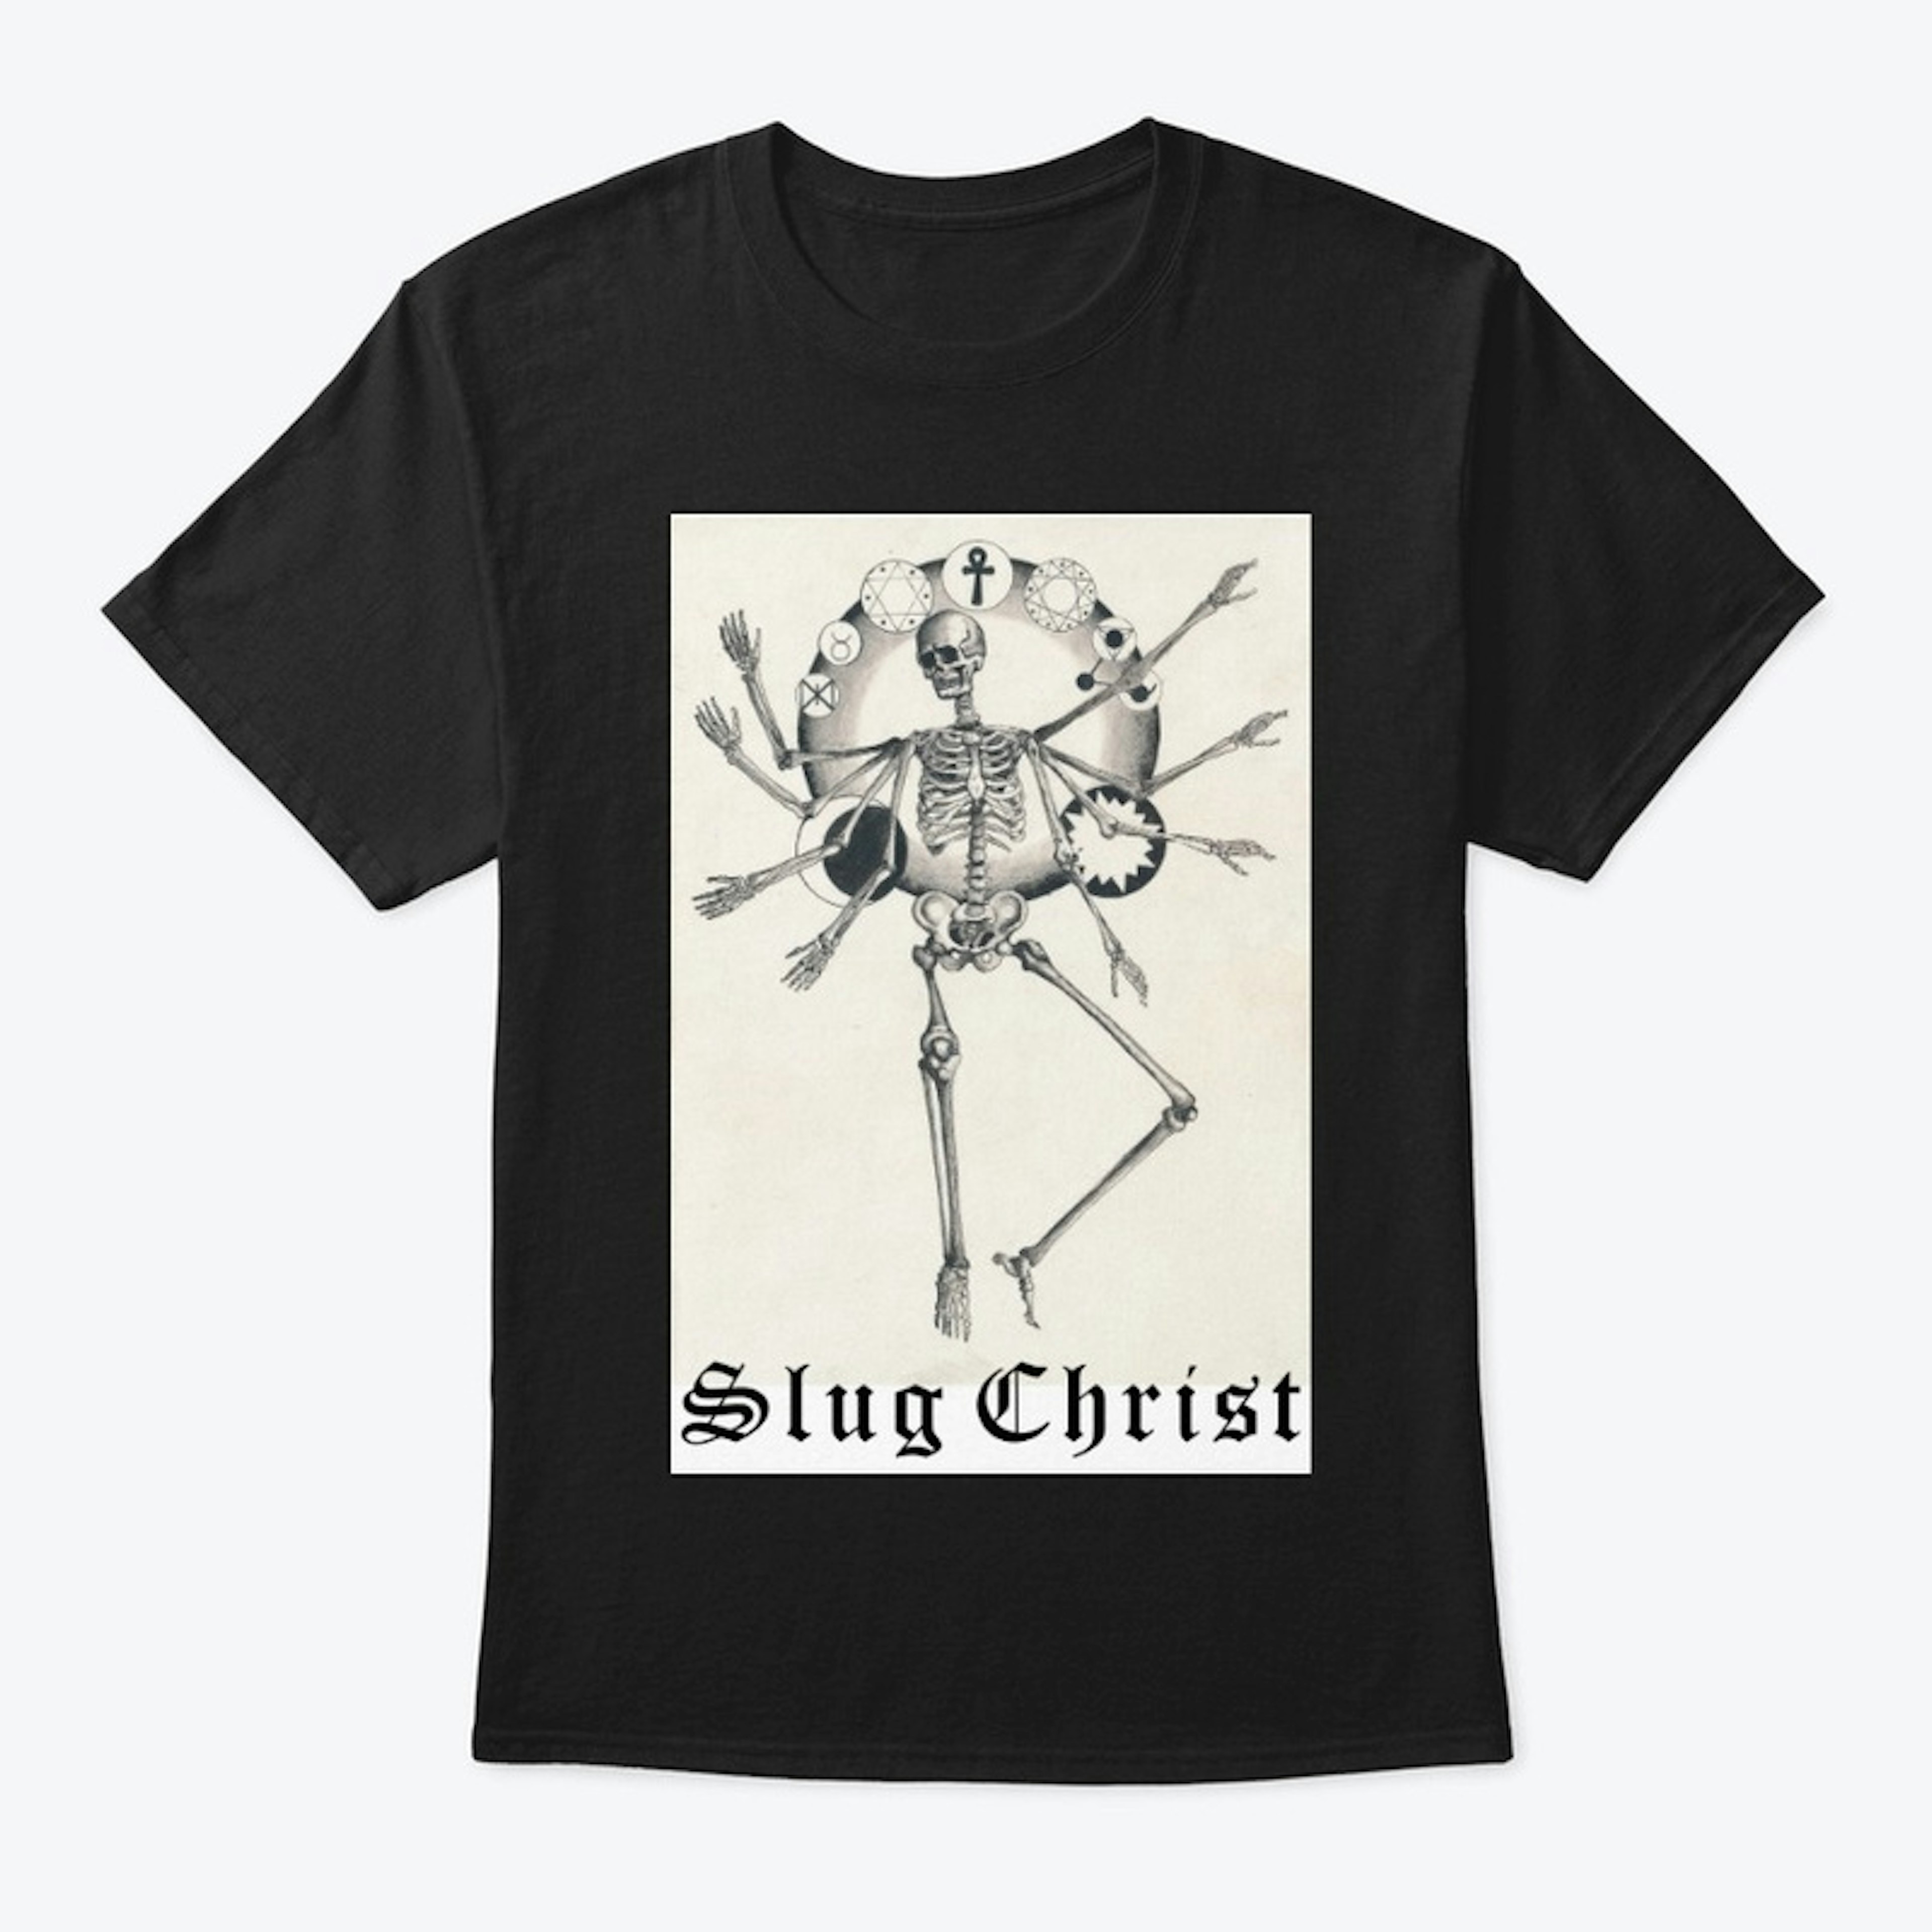 Slug Christ "Shaeol" T-Shirt